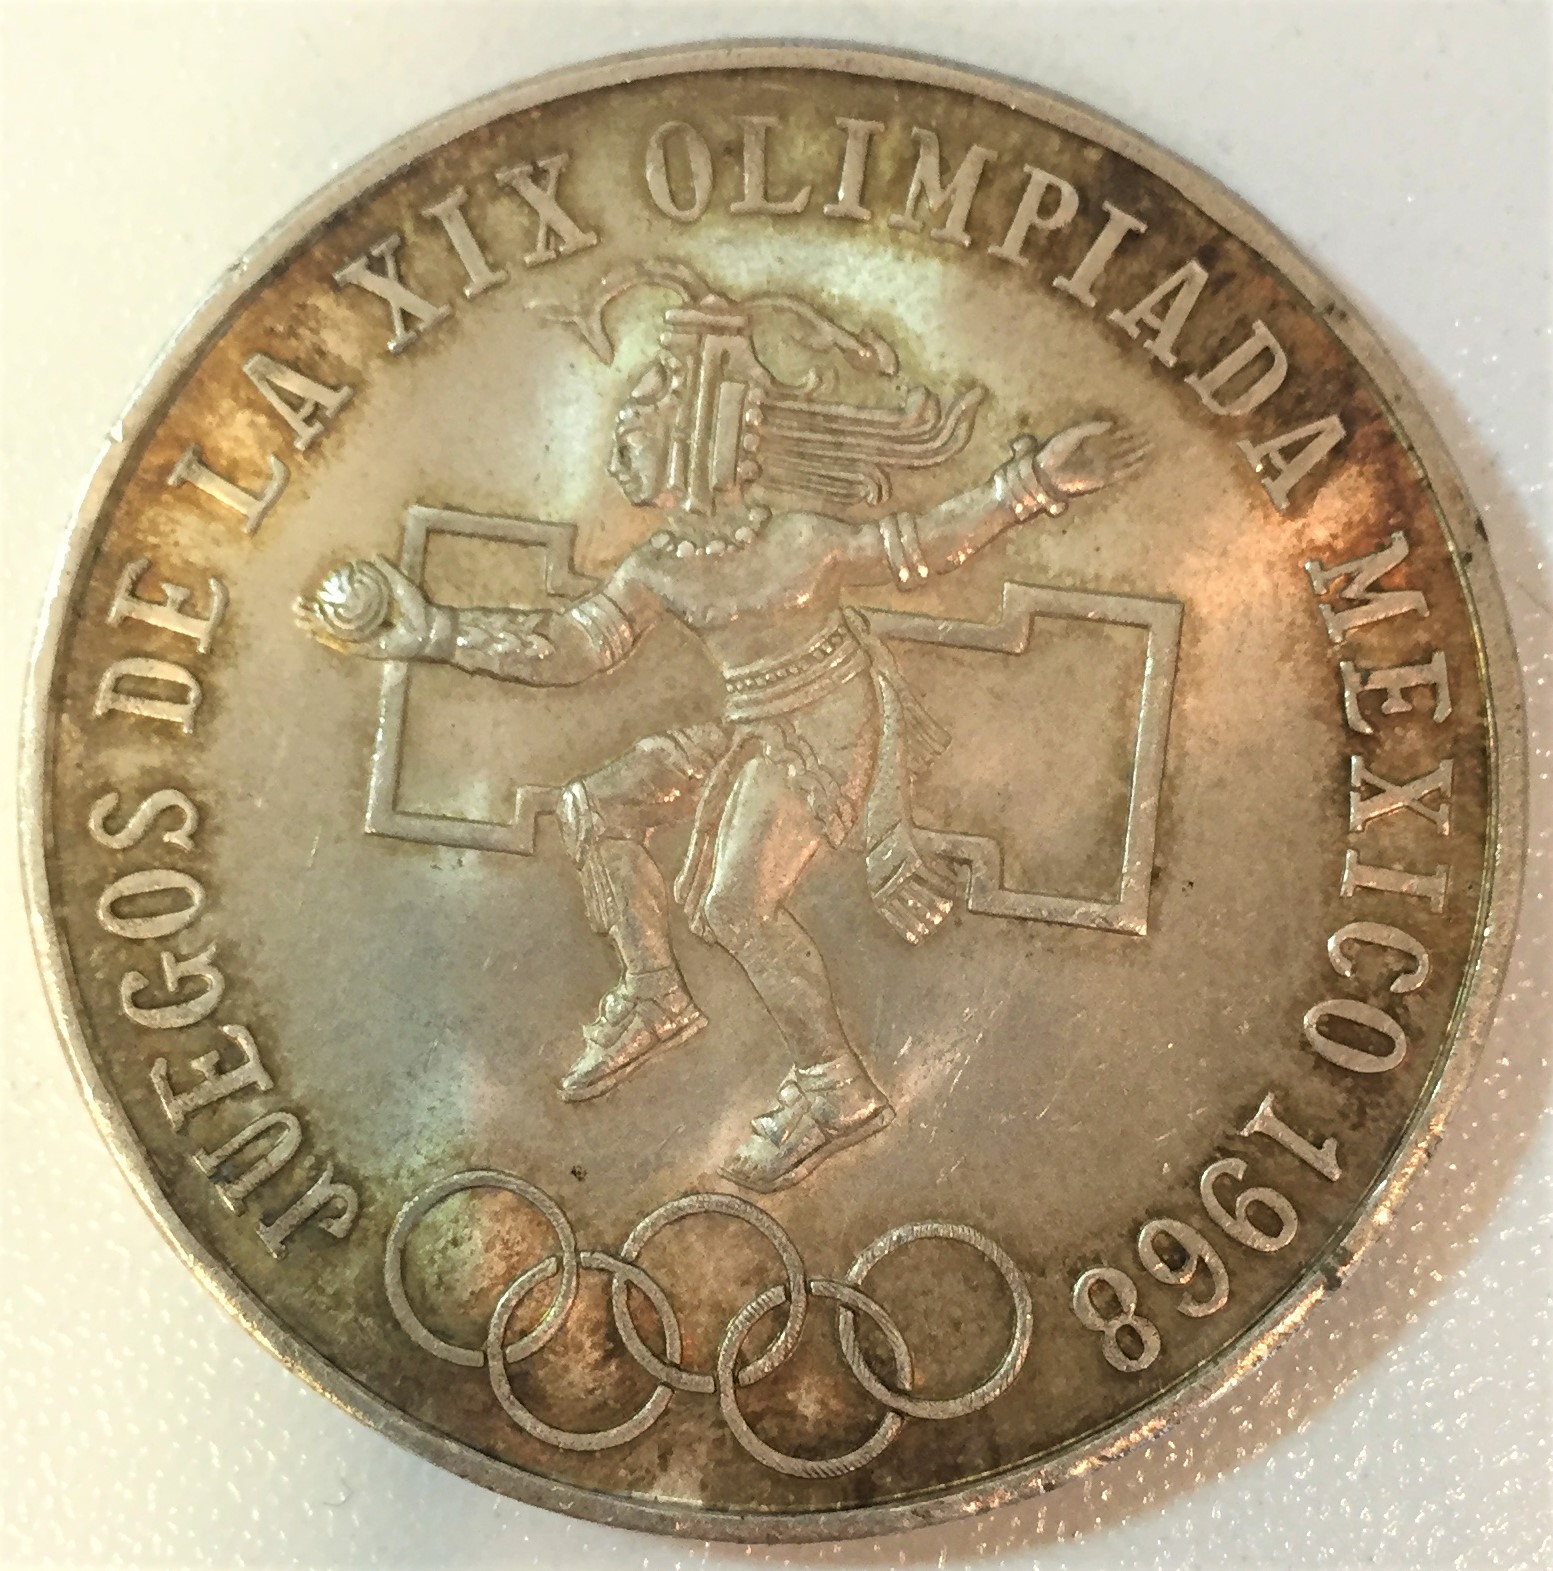 【外国銭】1968年メキシコオリンピック25ペソ銀貨